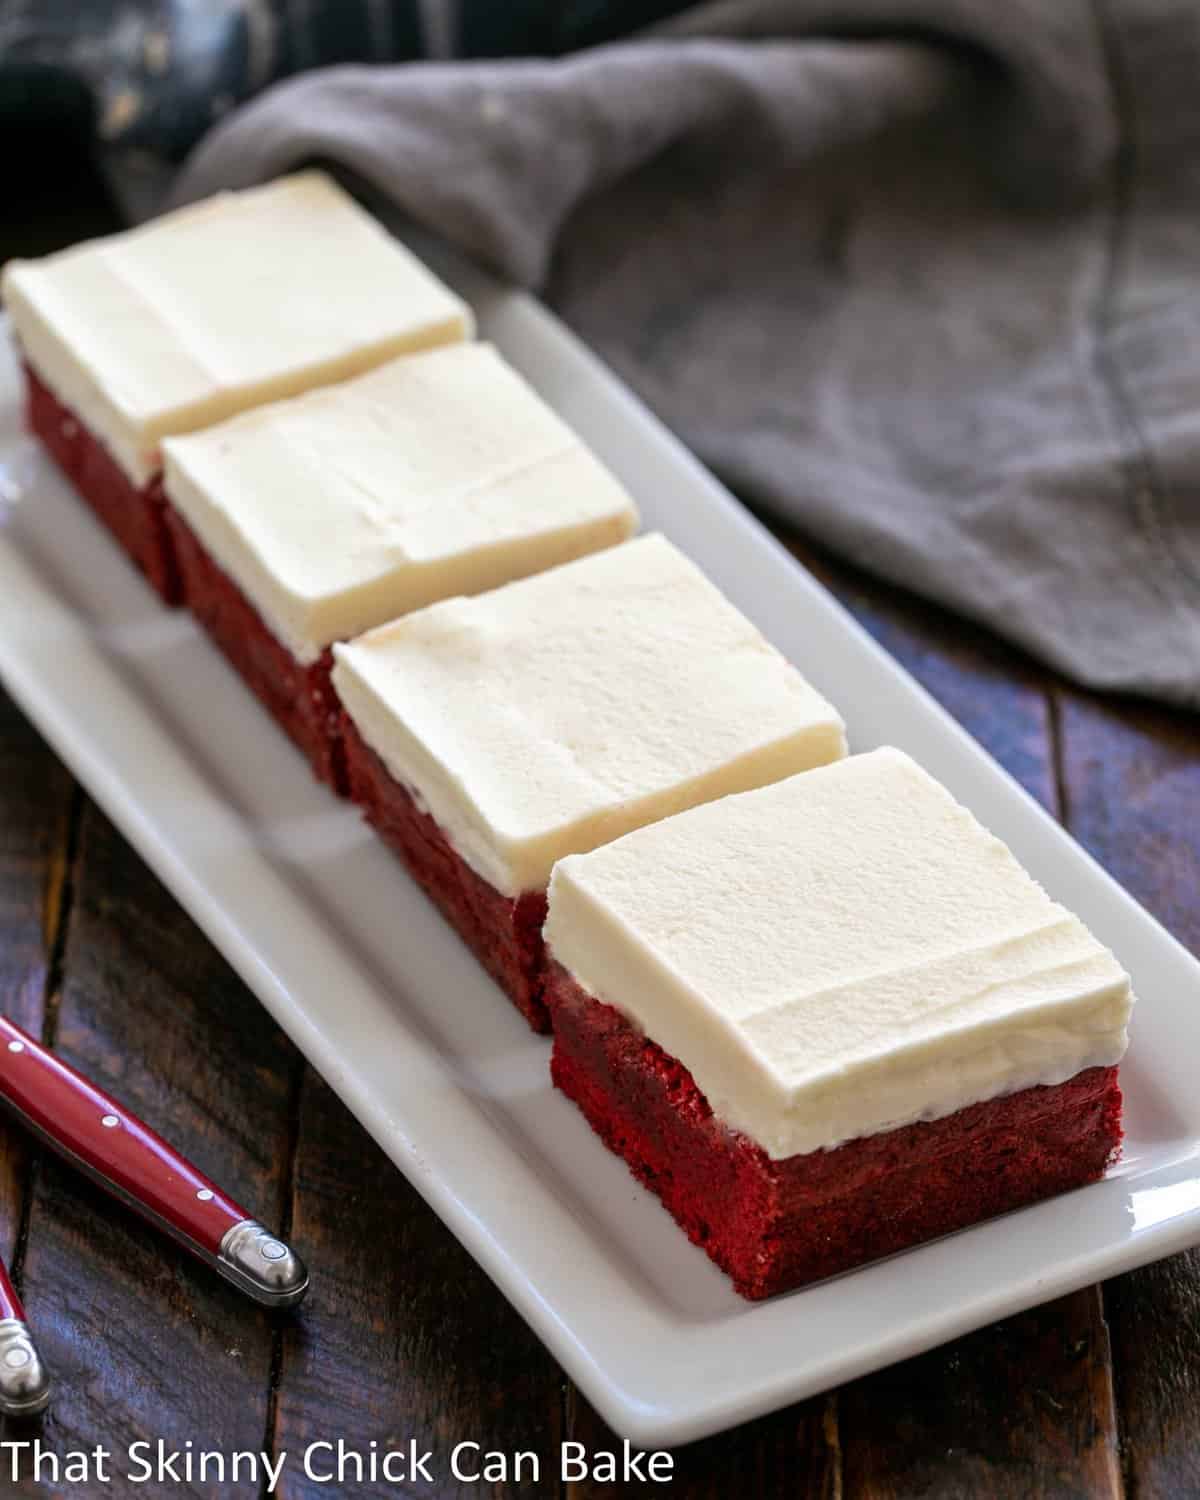 3 crvena baršunasta kolačića na bijelom keramičkom pladnju.